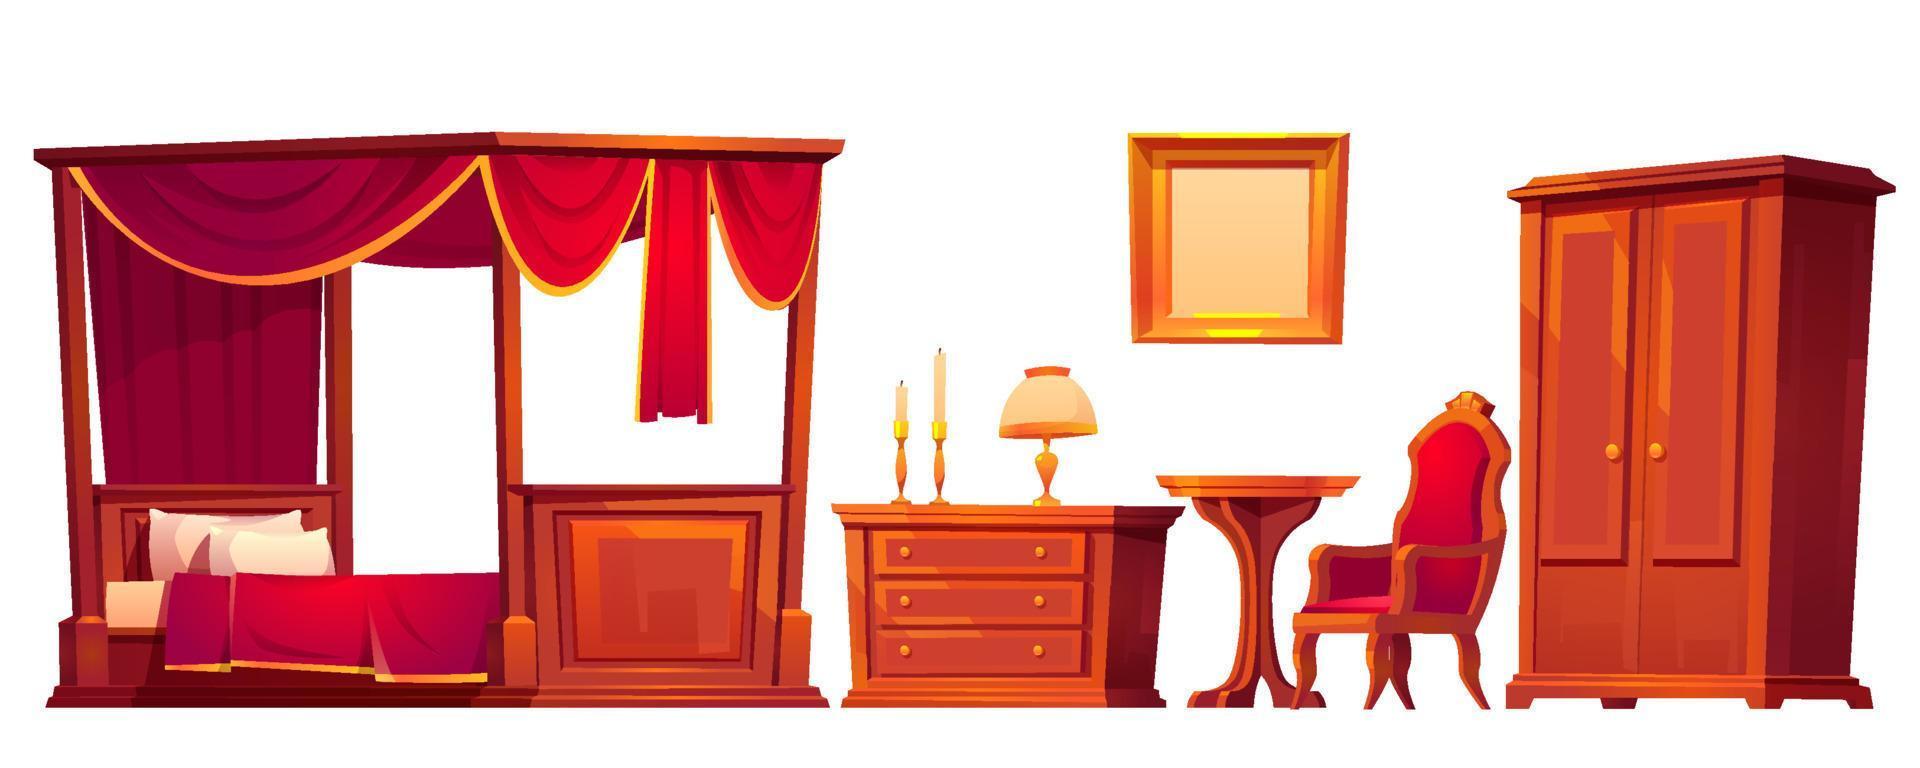 houten meubilair voor oud luxe slaapkamer vector